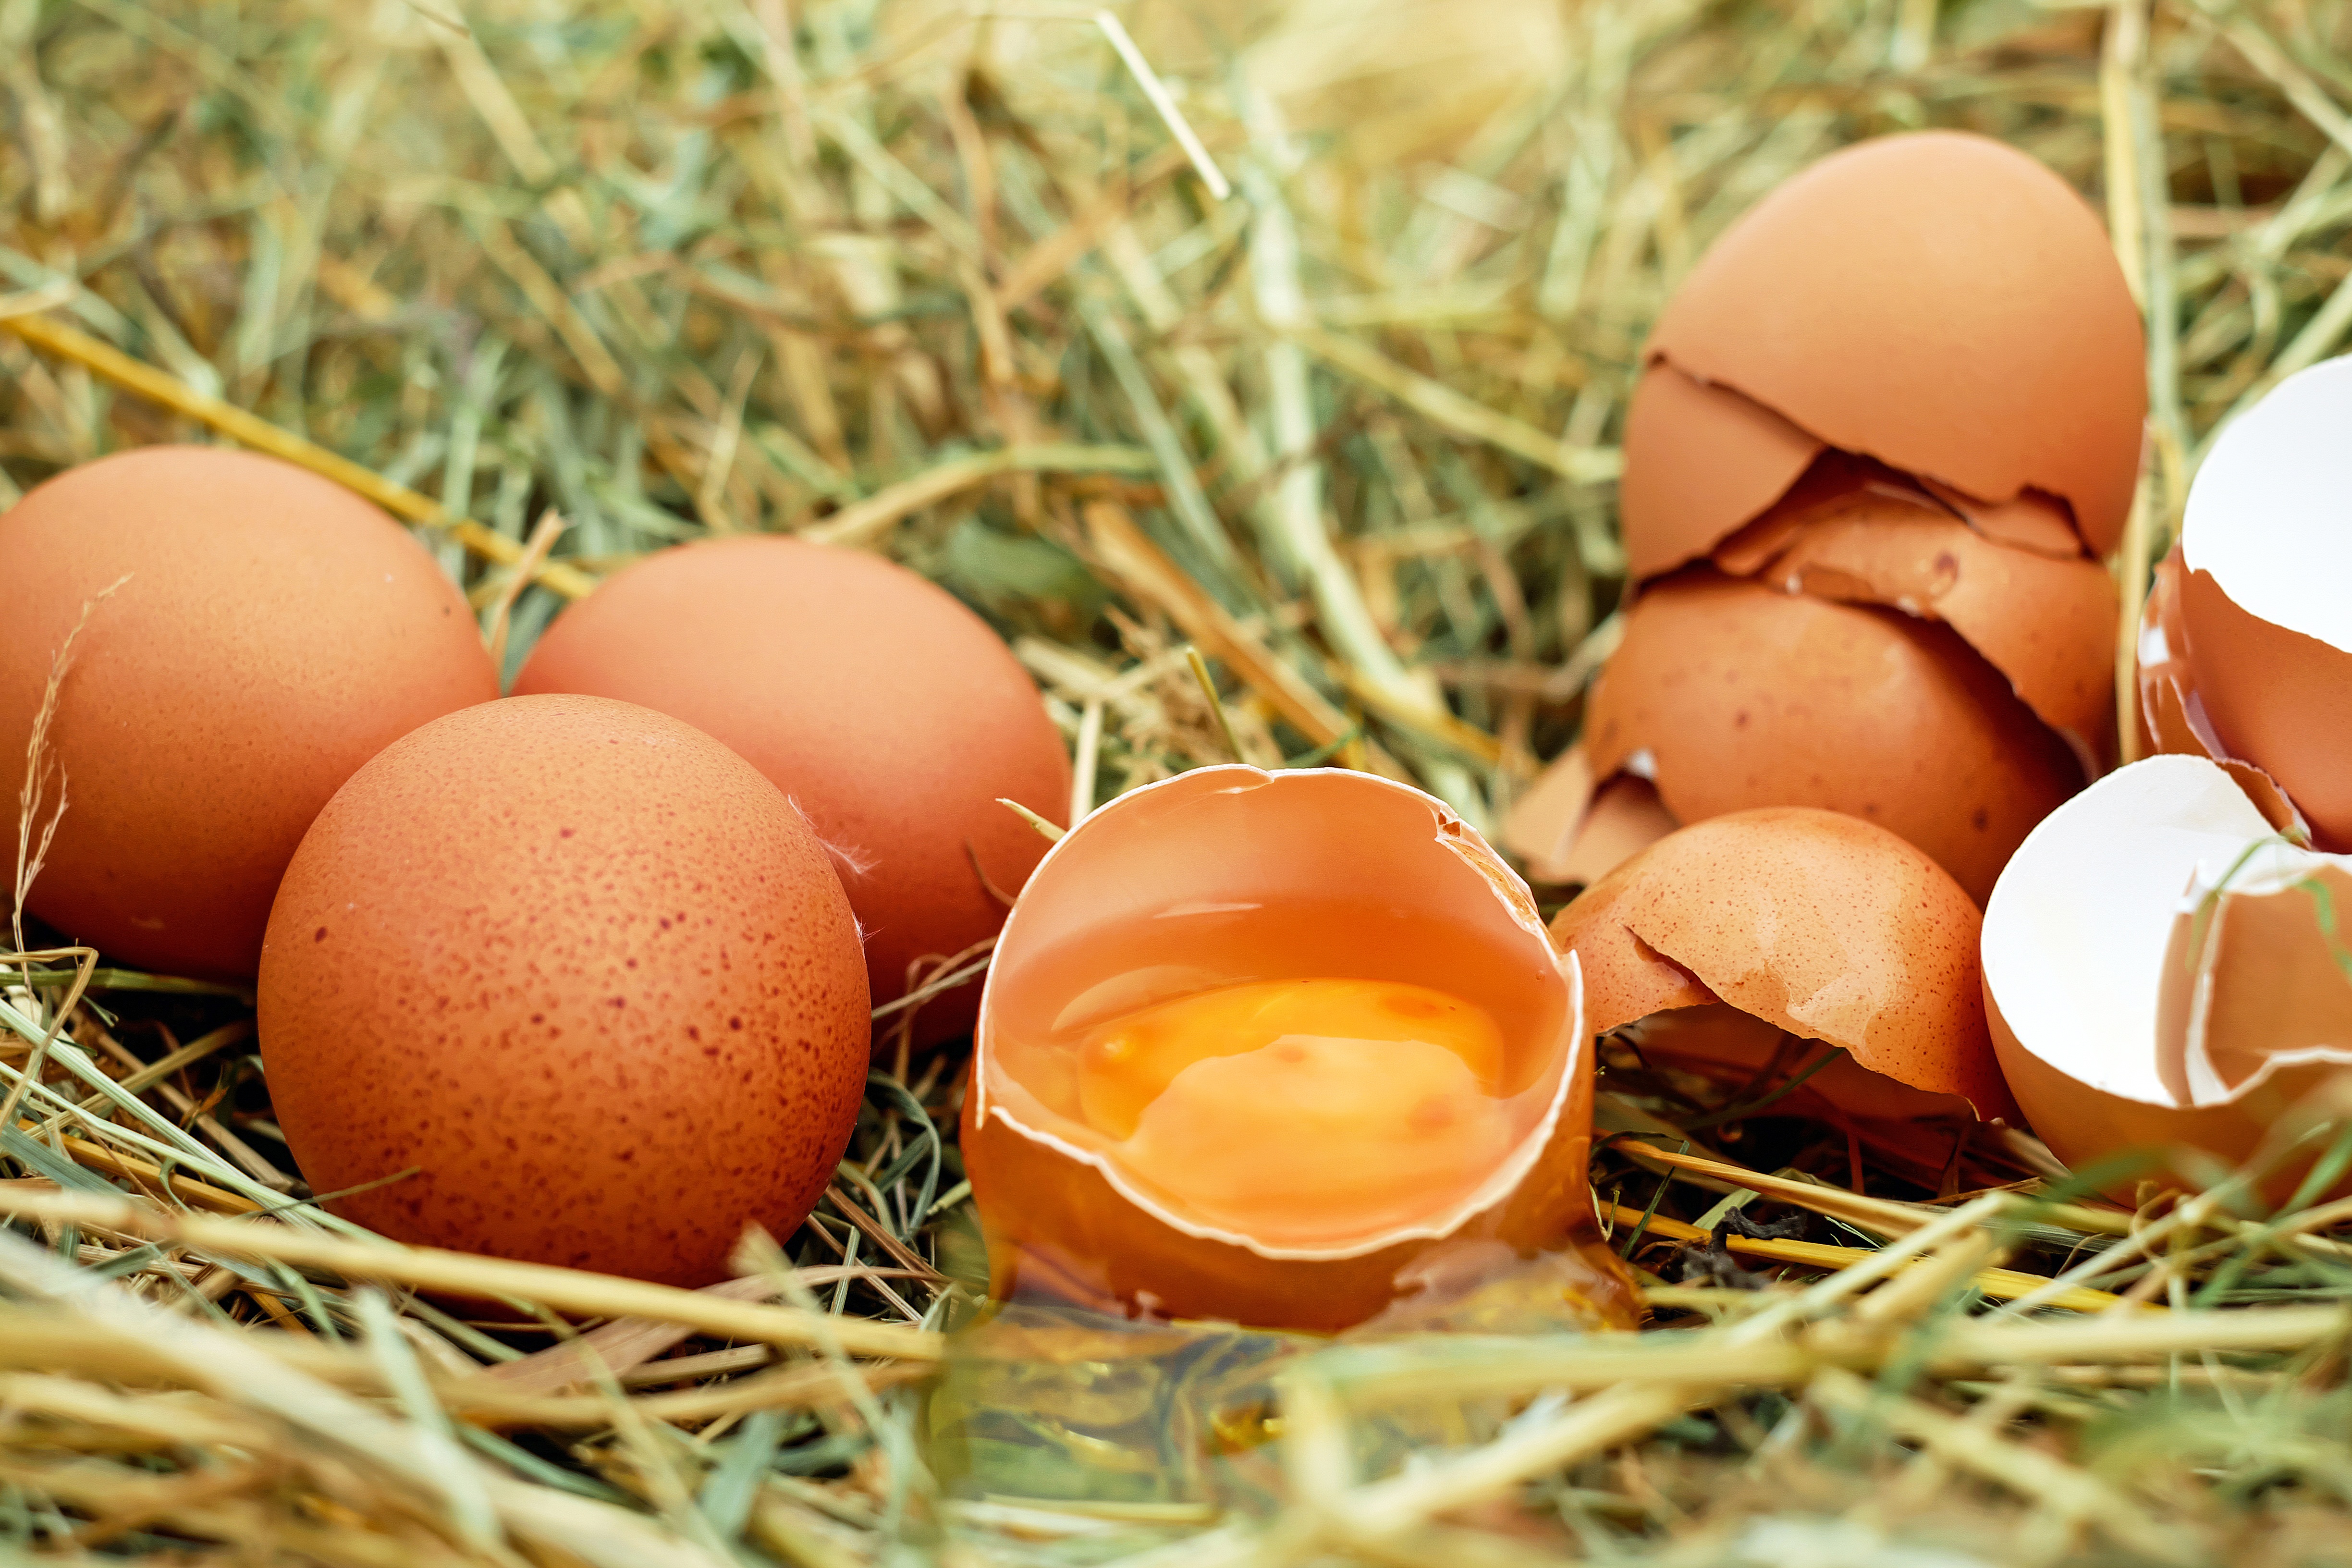 Trứng gà chứa nhiều chất dinh dưỡng rất tốt cho mẹ bầu 2 tháng